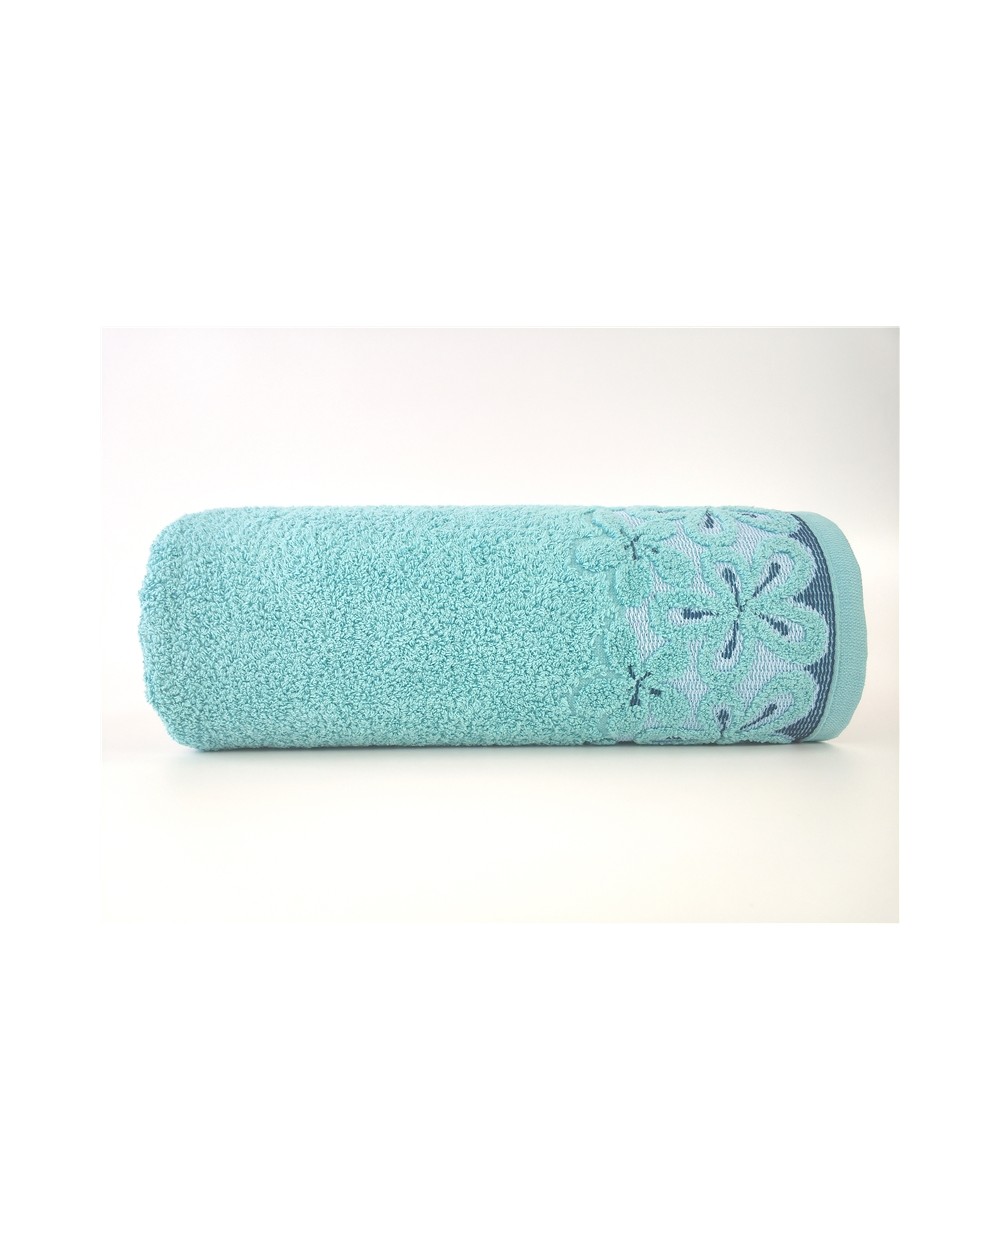 Ręcznik Bella mikrobawełna 50x90 aqua